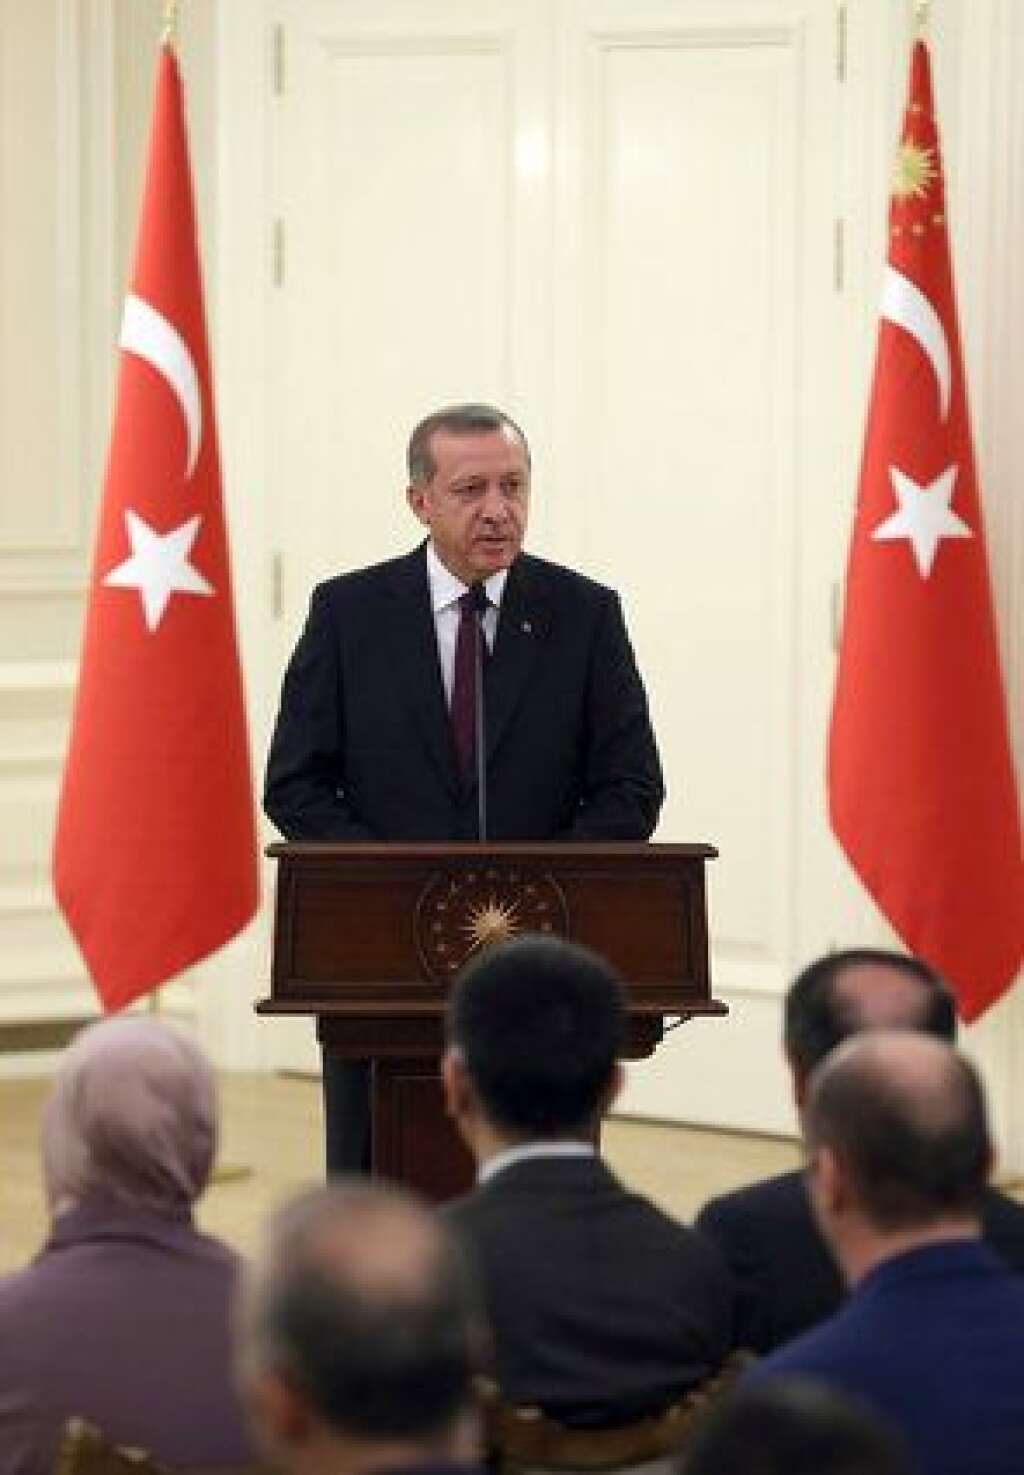 La Turquie s'interroge sur son soutien - Le président turc Recep Tayyip Erdogan s'est félicité des frappes aériennes menées en Syrie. "Ce serait une mauvaise idée de les arrêter", a-t-il expliqué, précisant que son pays  "prendrona toutes les mesures nécessaires pour combattre le terrorisme", y compris peut-être la participation à des frappes.